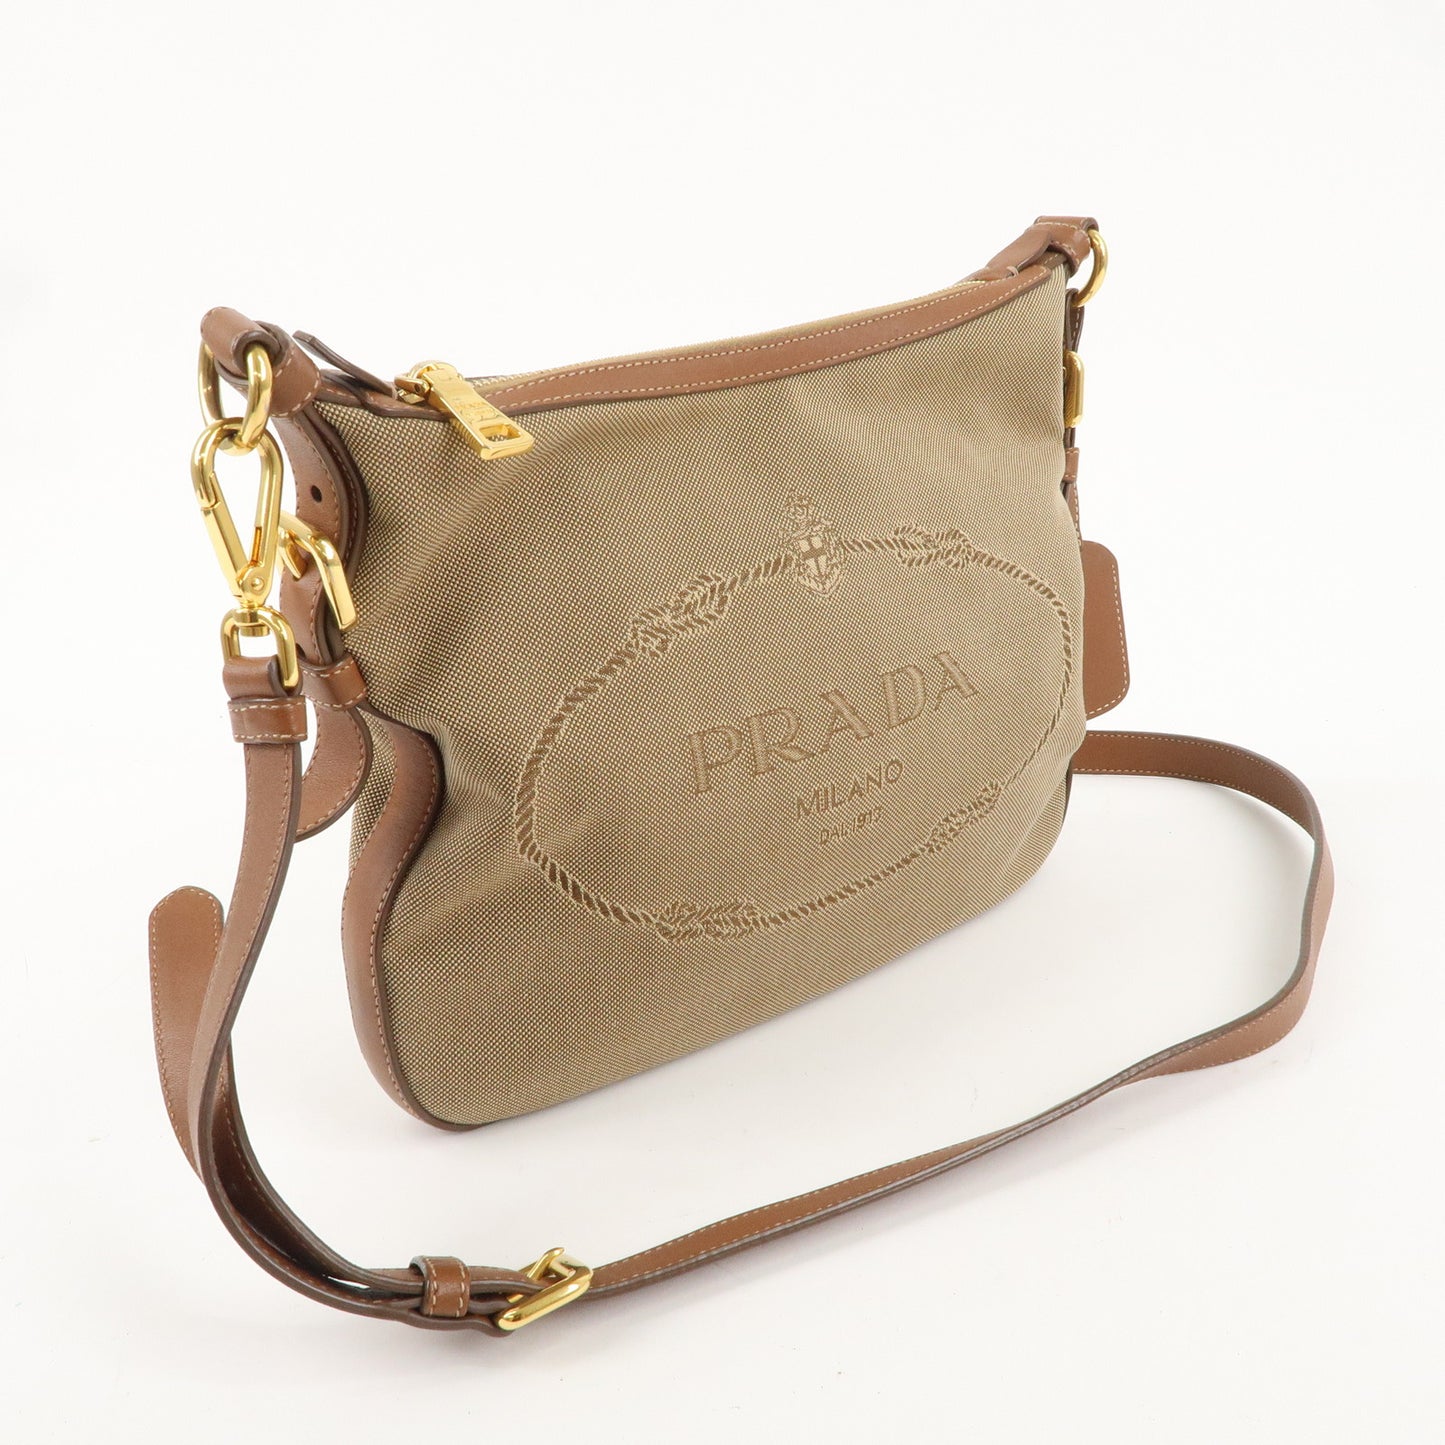 PRADA Logo Jacquard Leather Shoulder Bag Beige Brown BT0706